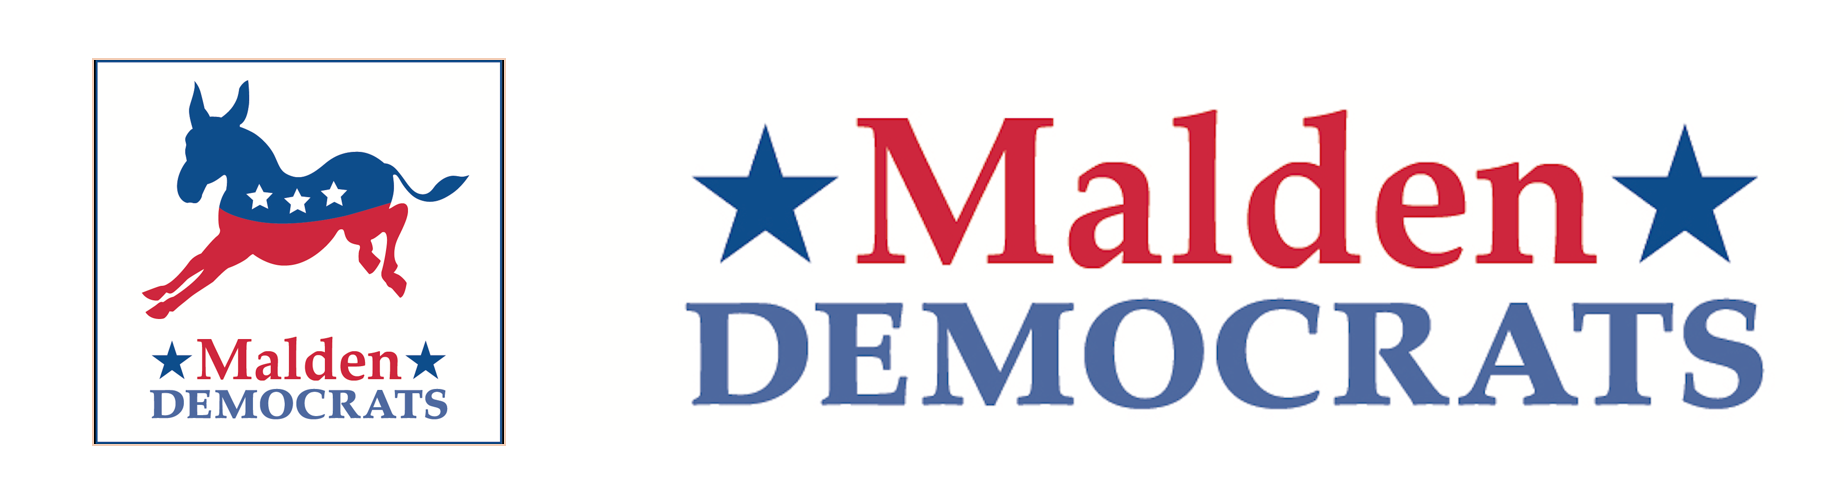 Malden Democrats